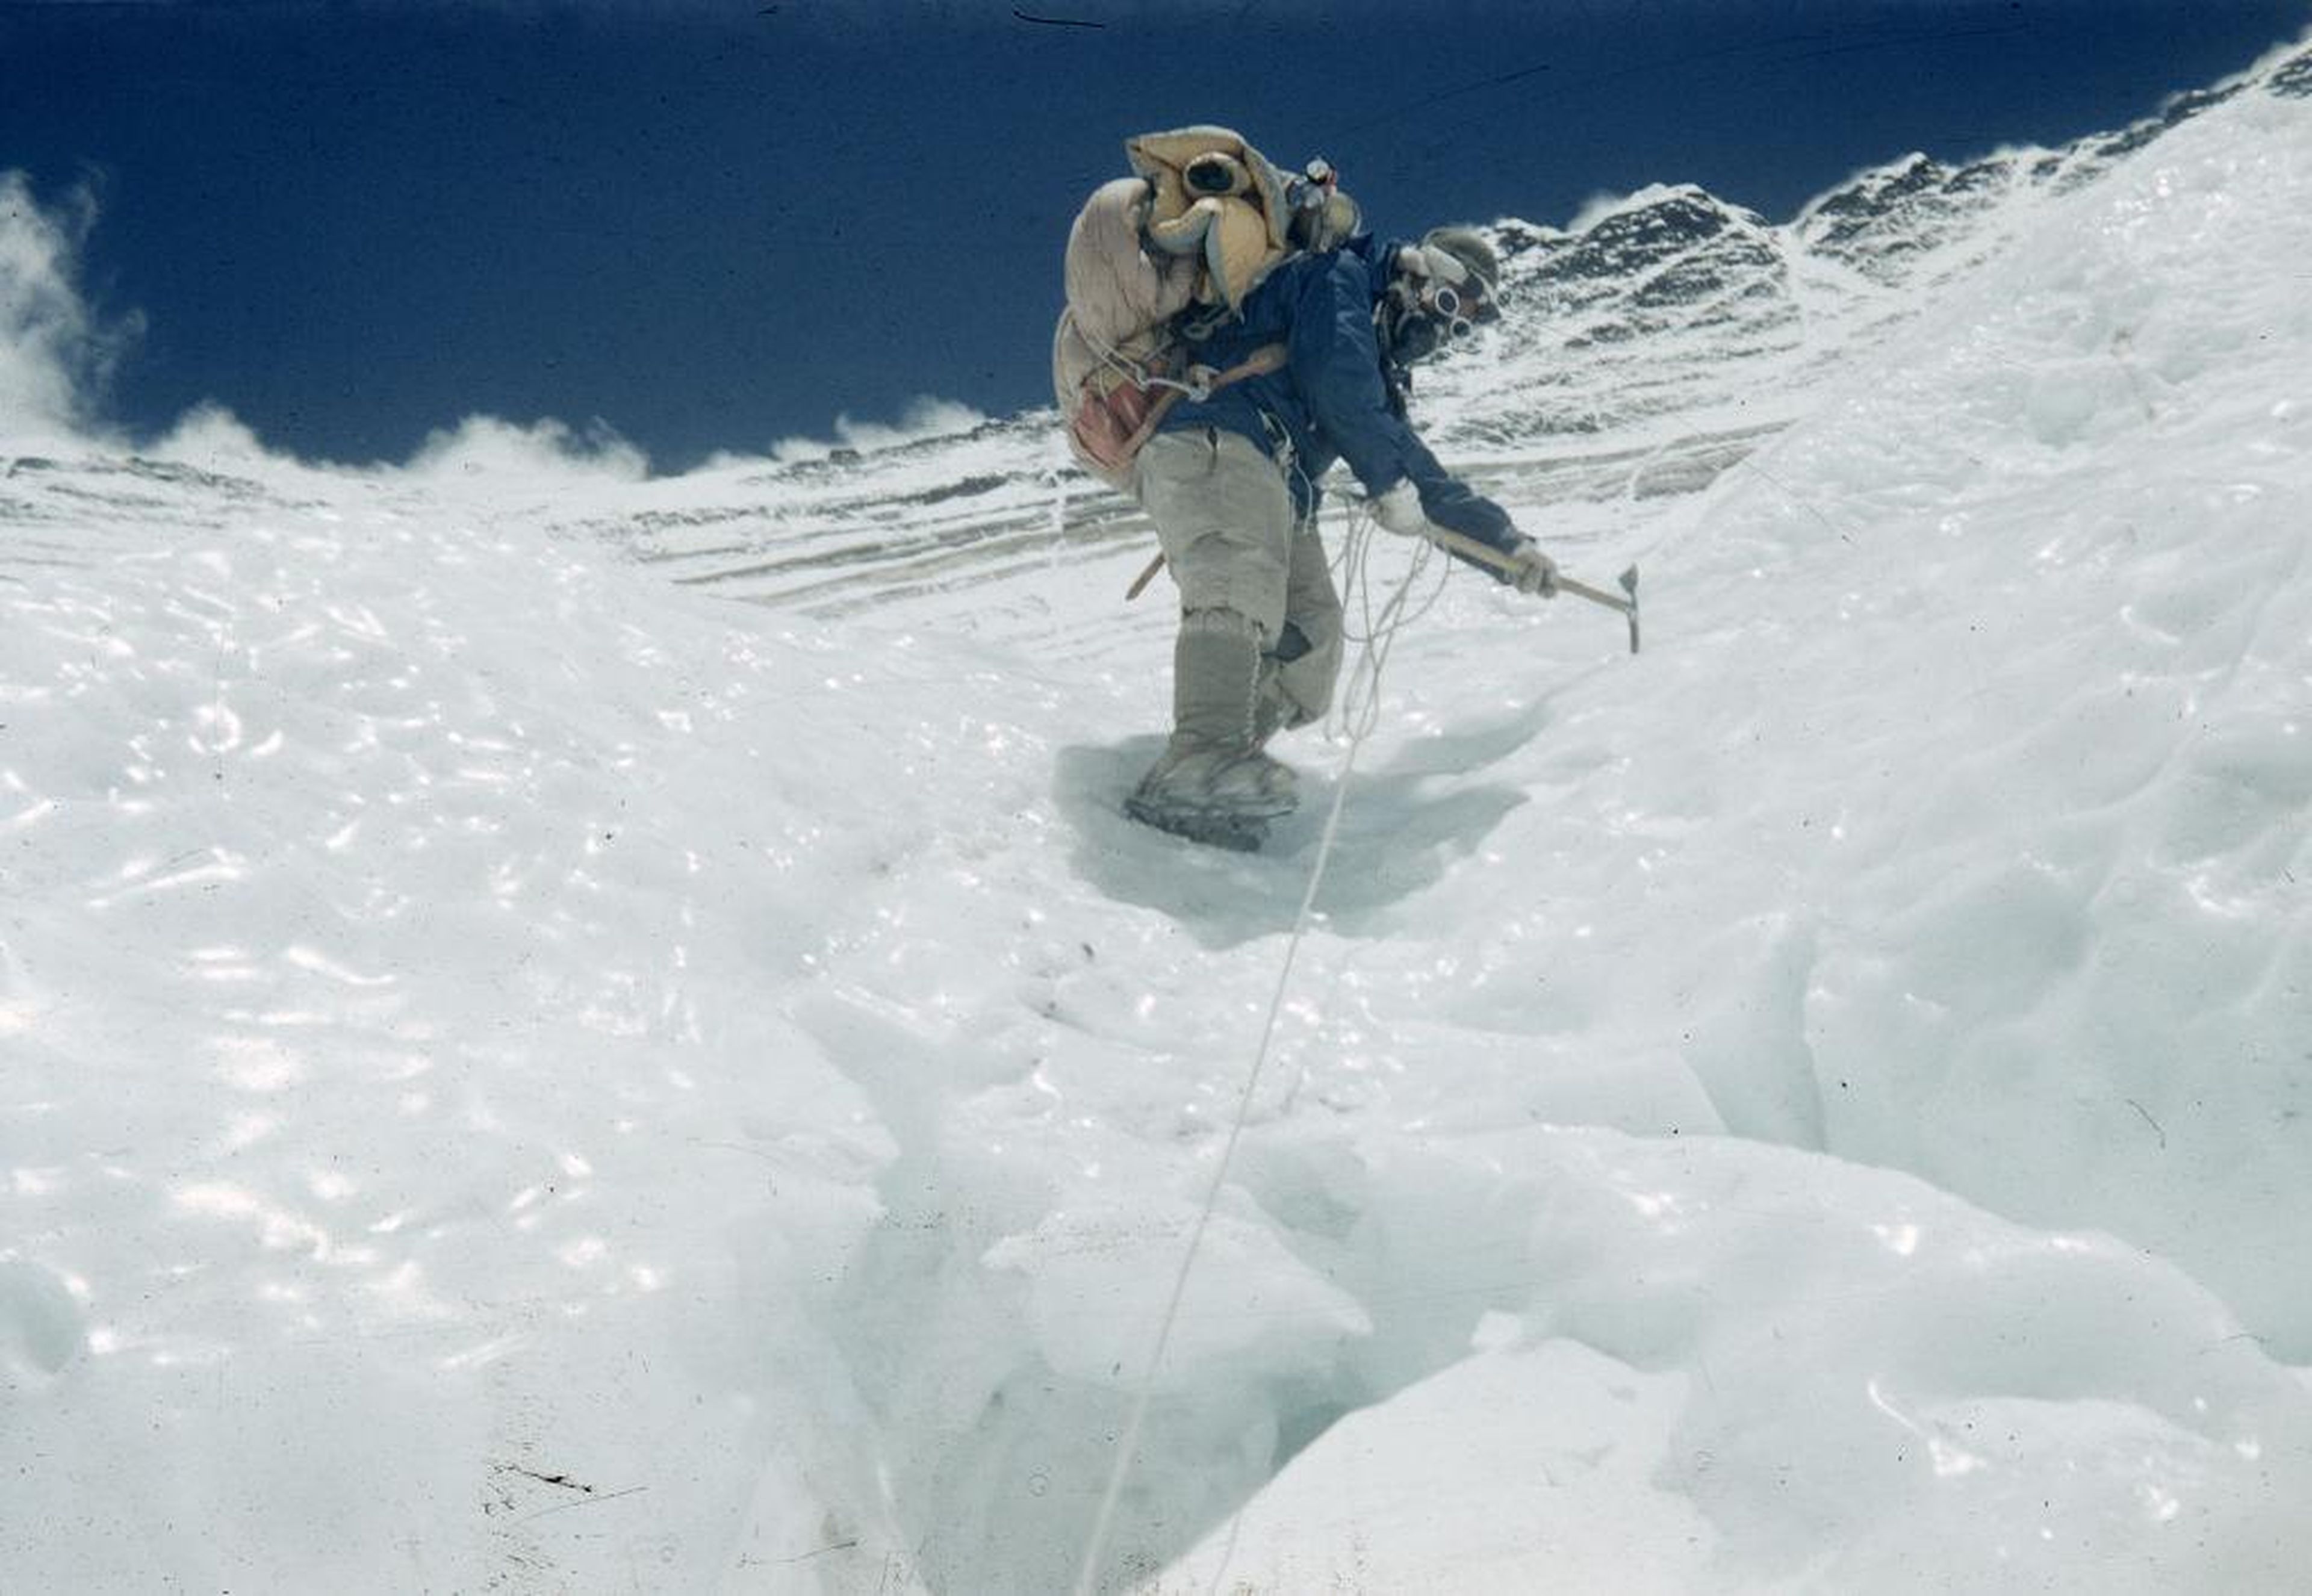 Tenzing Norgay usa crampones para escalar una zona helada en la Cara de Lhotse, en Nepal, en la Expedición al Monte Everest en marzo de 1953.